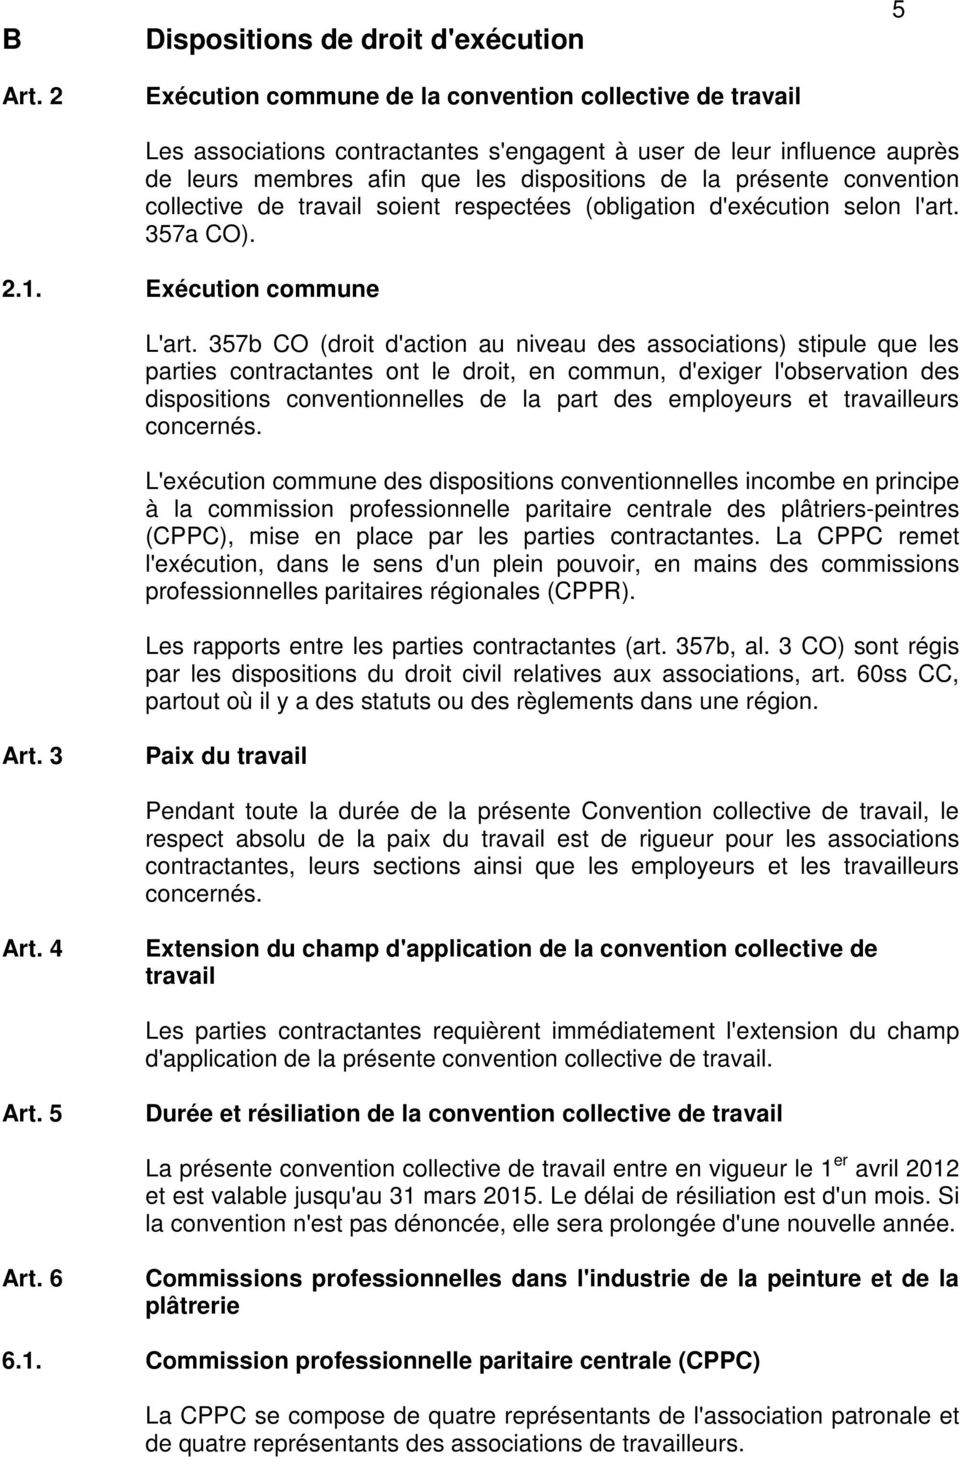 dispositions de la présente convention collective de travail soient respectées (obligation d'exécution selon l'art. 357a CO). 2.1. Exécution commune L'art.